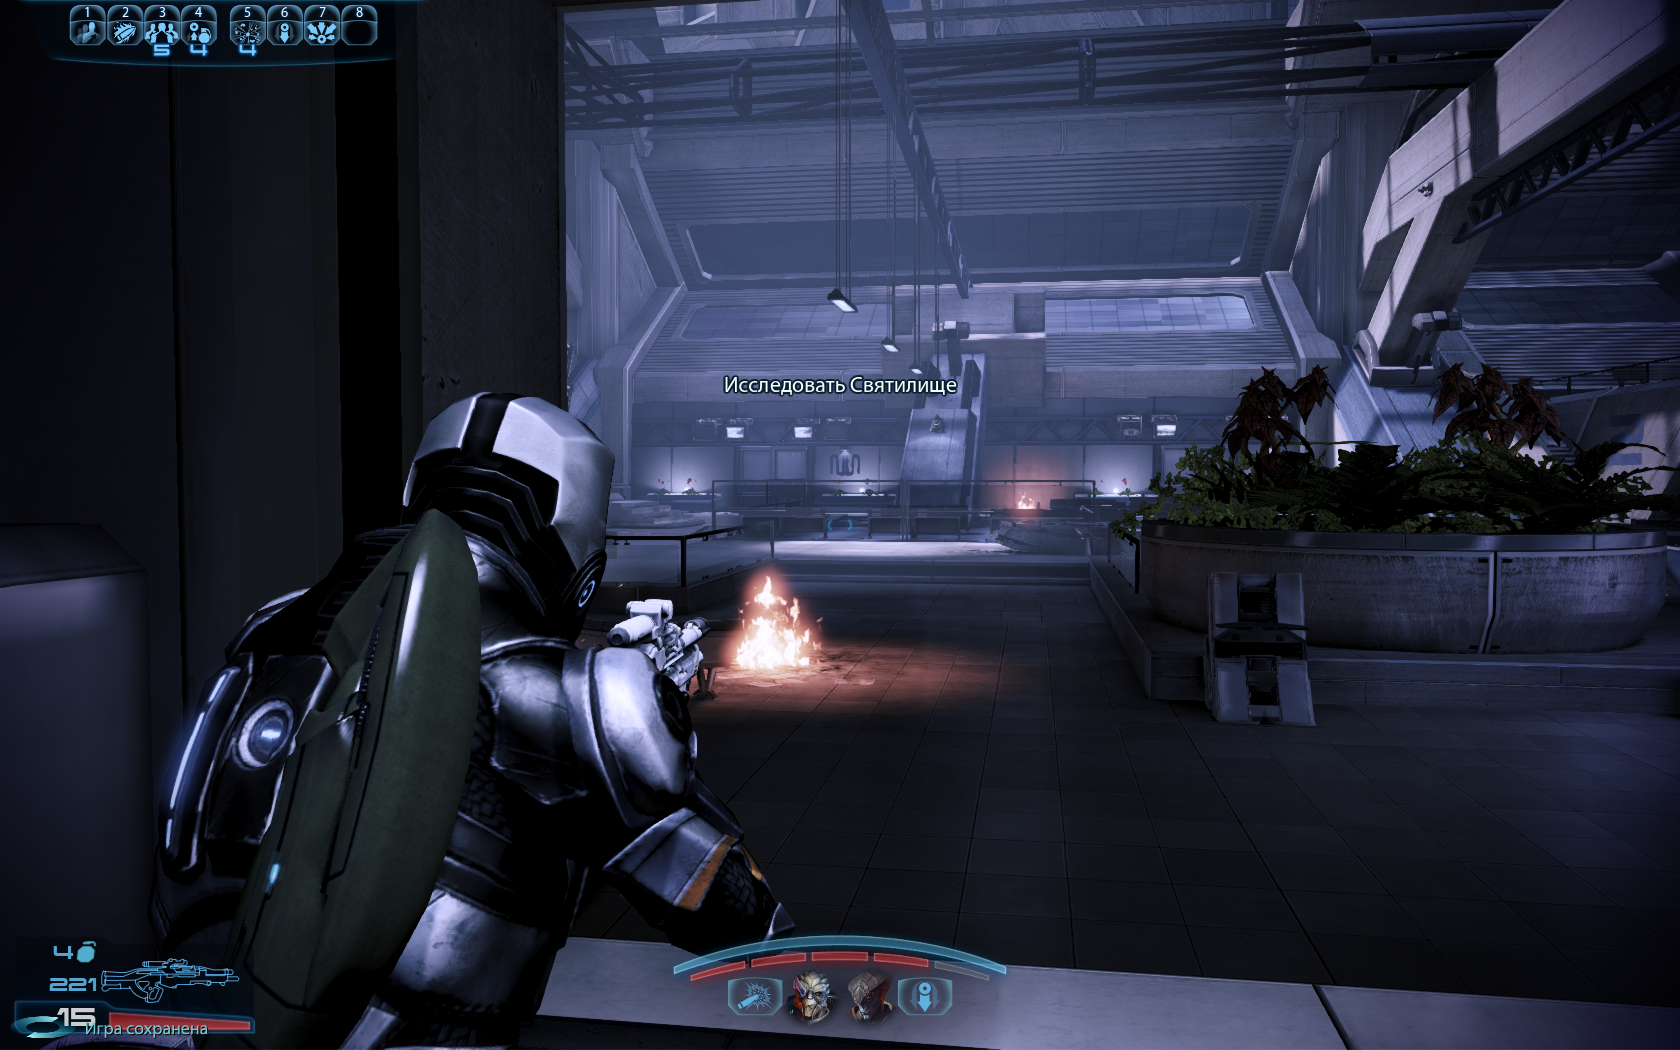 Mass Effect 3 Исследуем Святилище